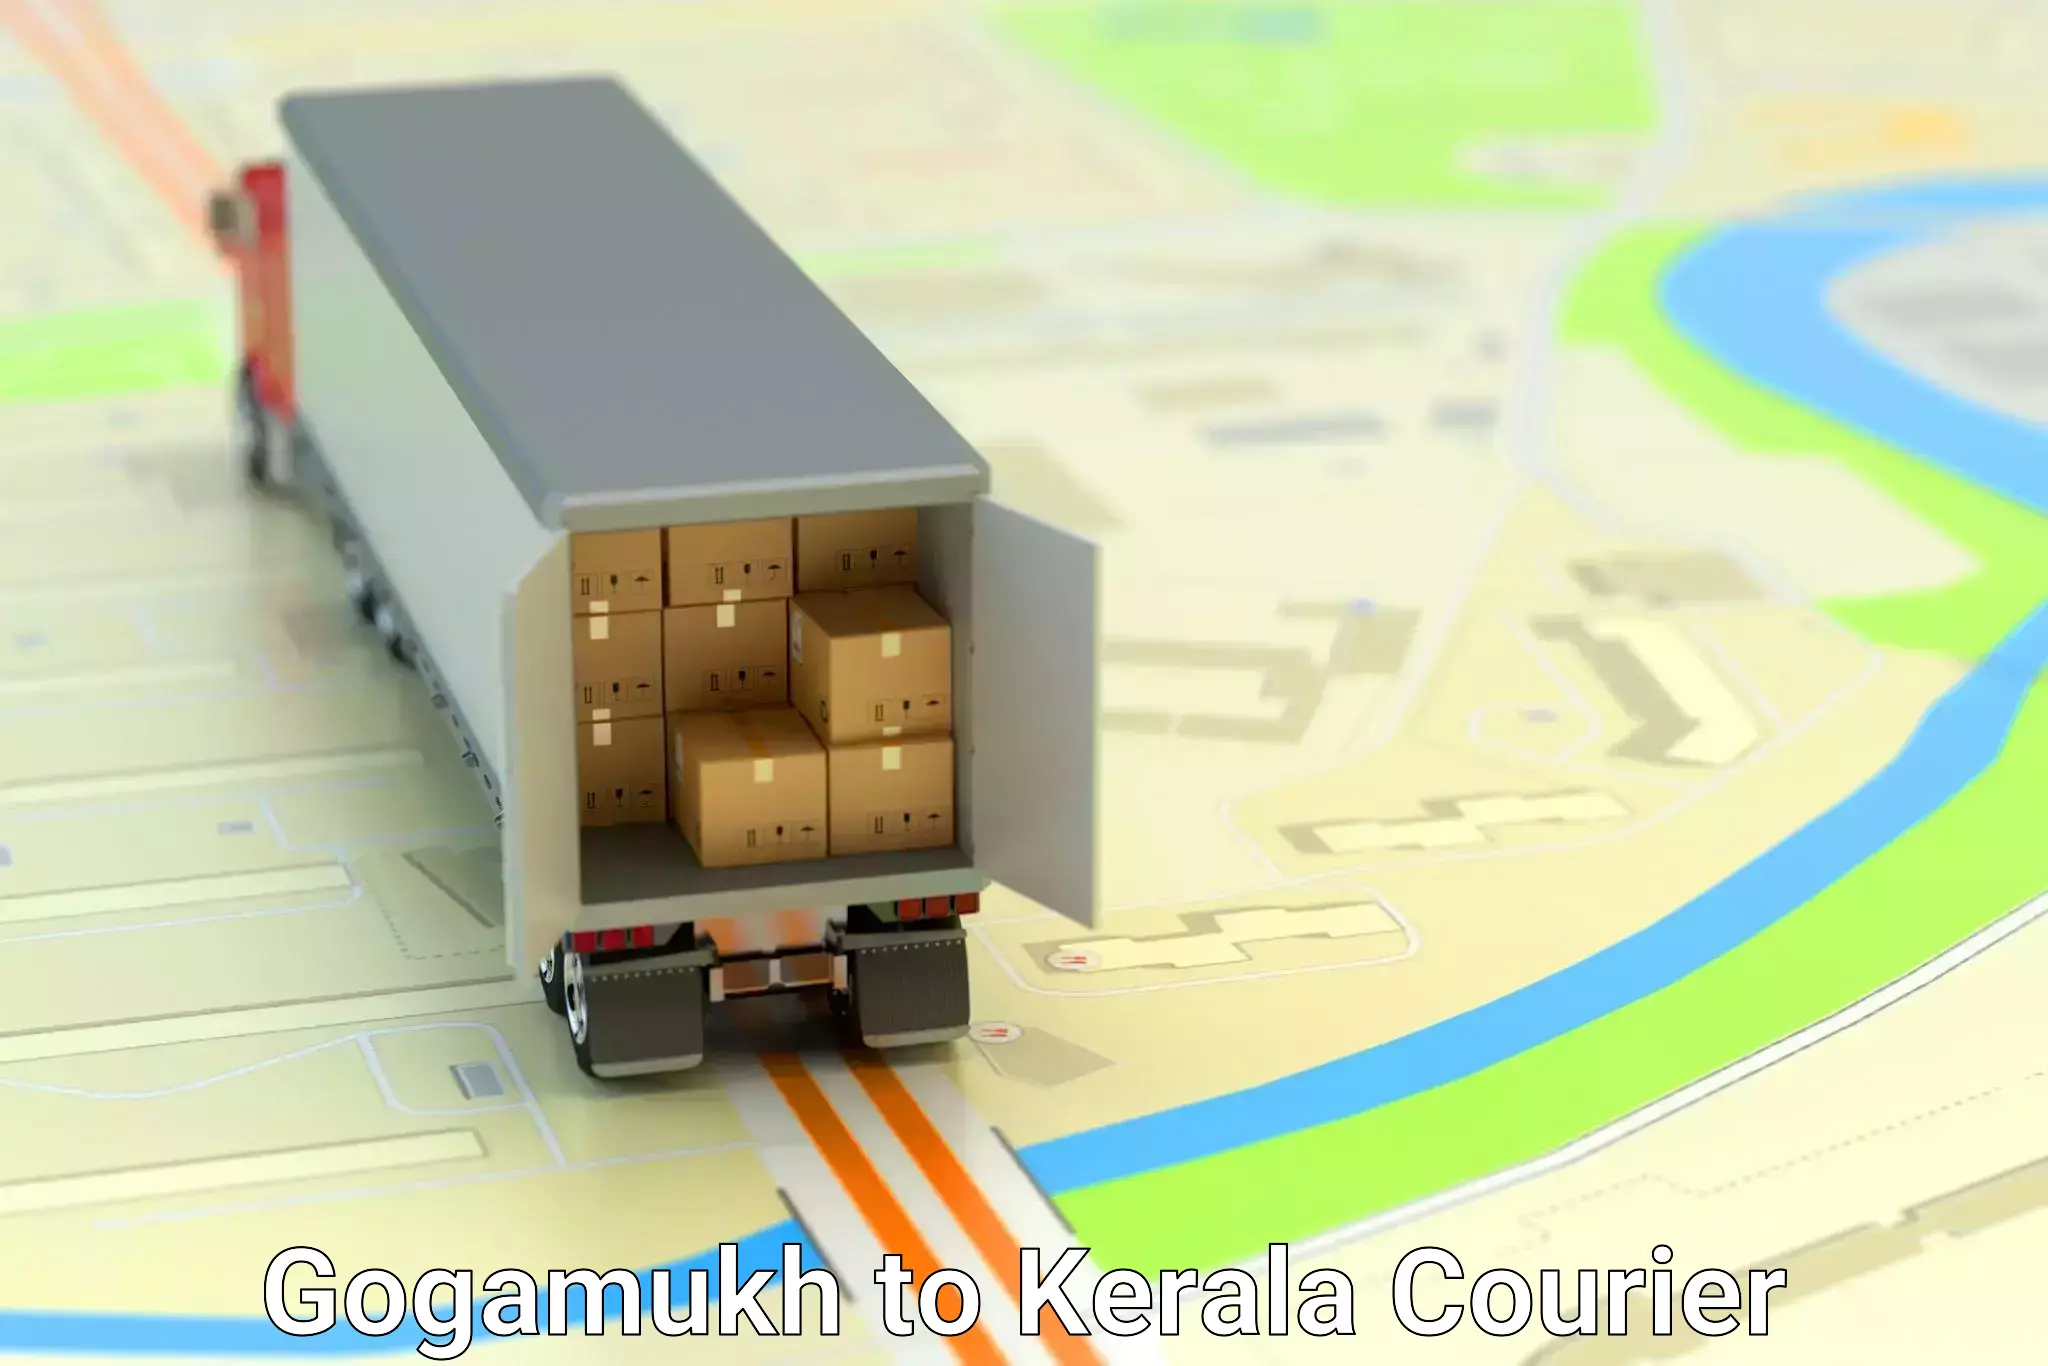 24-hour delivery options Gogamukh to Panayathamparamba